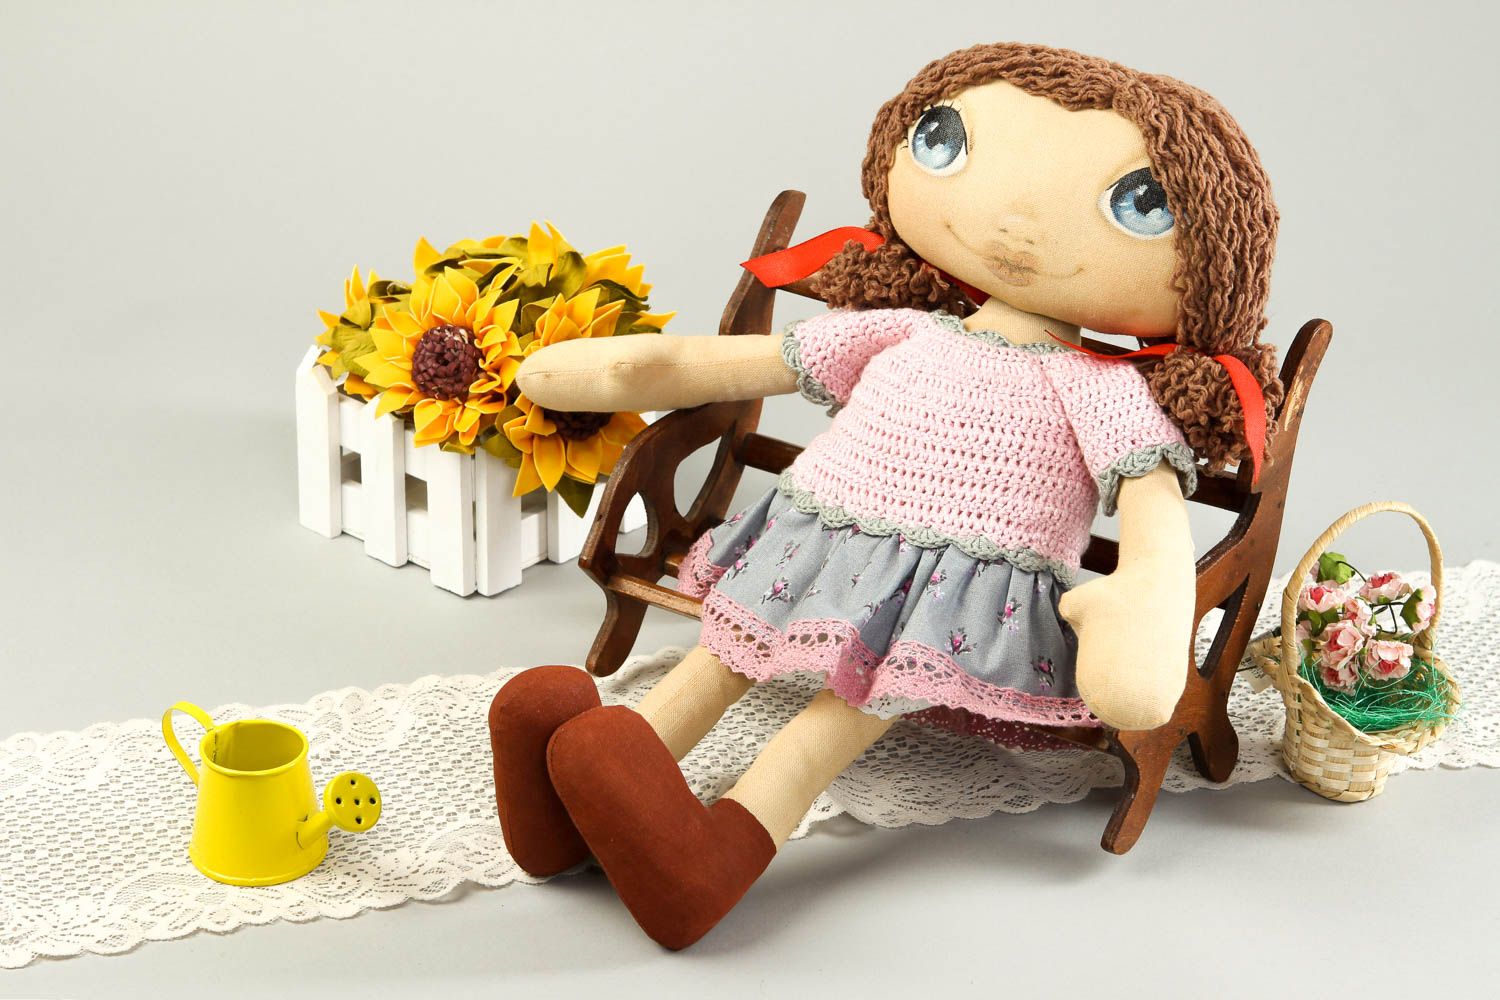 Handmade soft toy girl doll designer toys homemade home decor gifts for girls photo 1